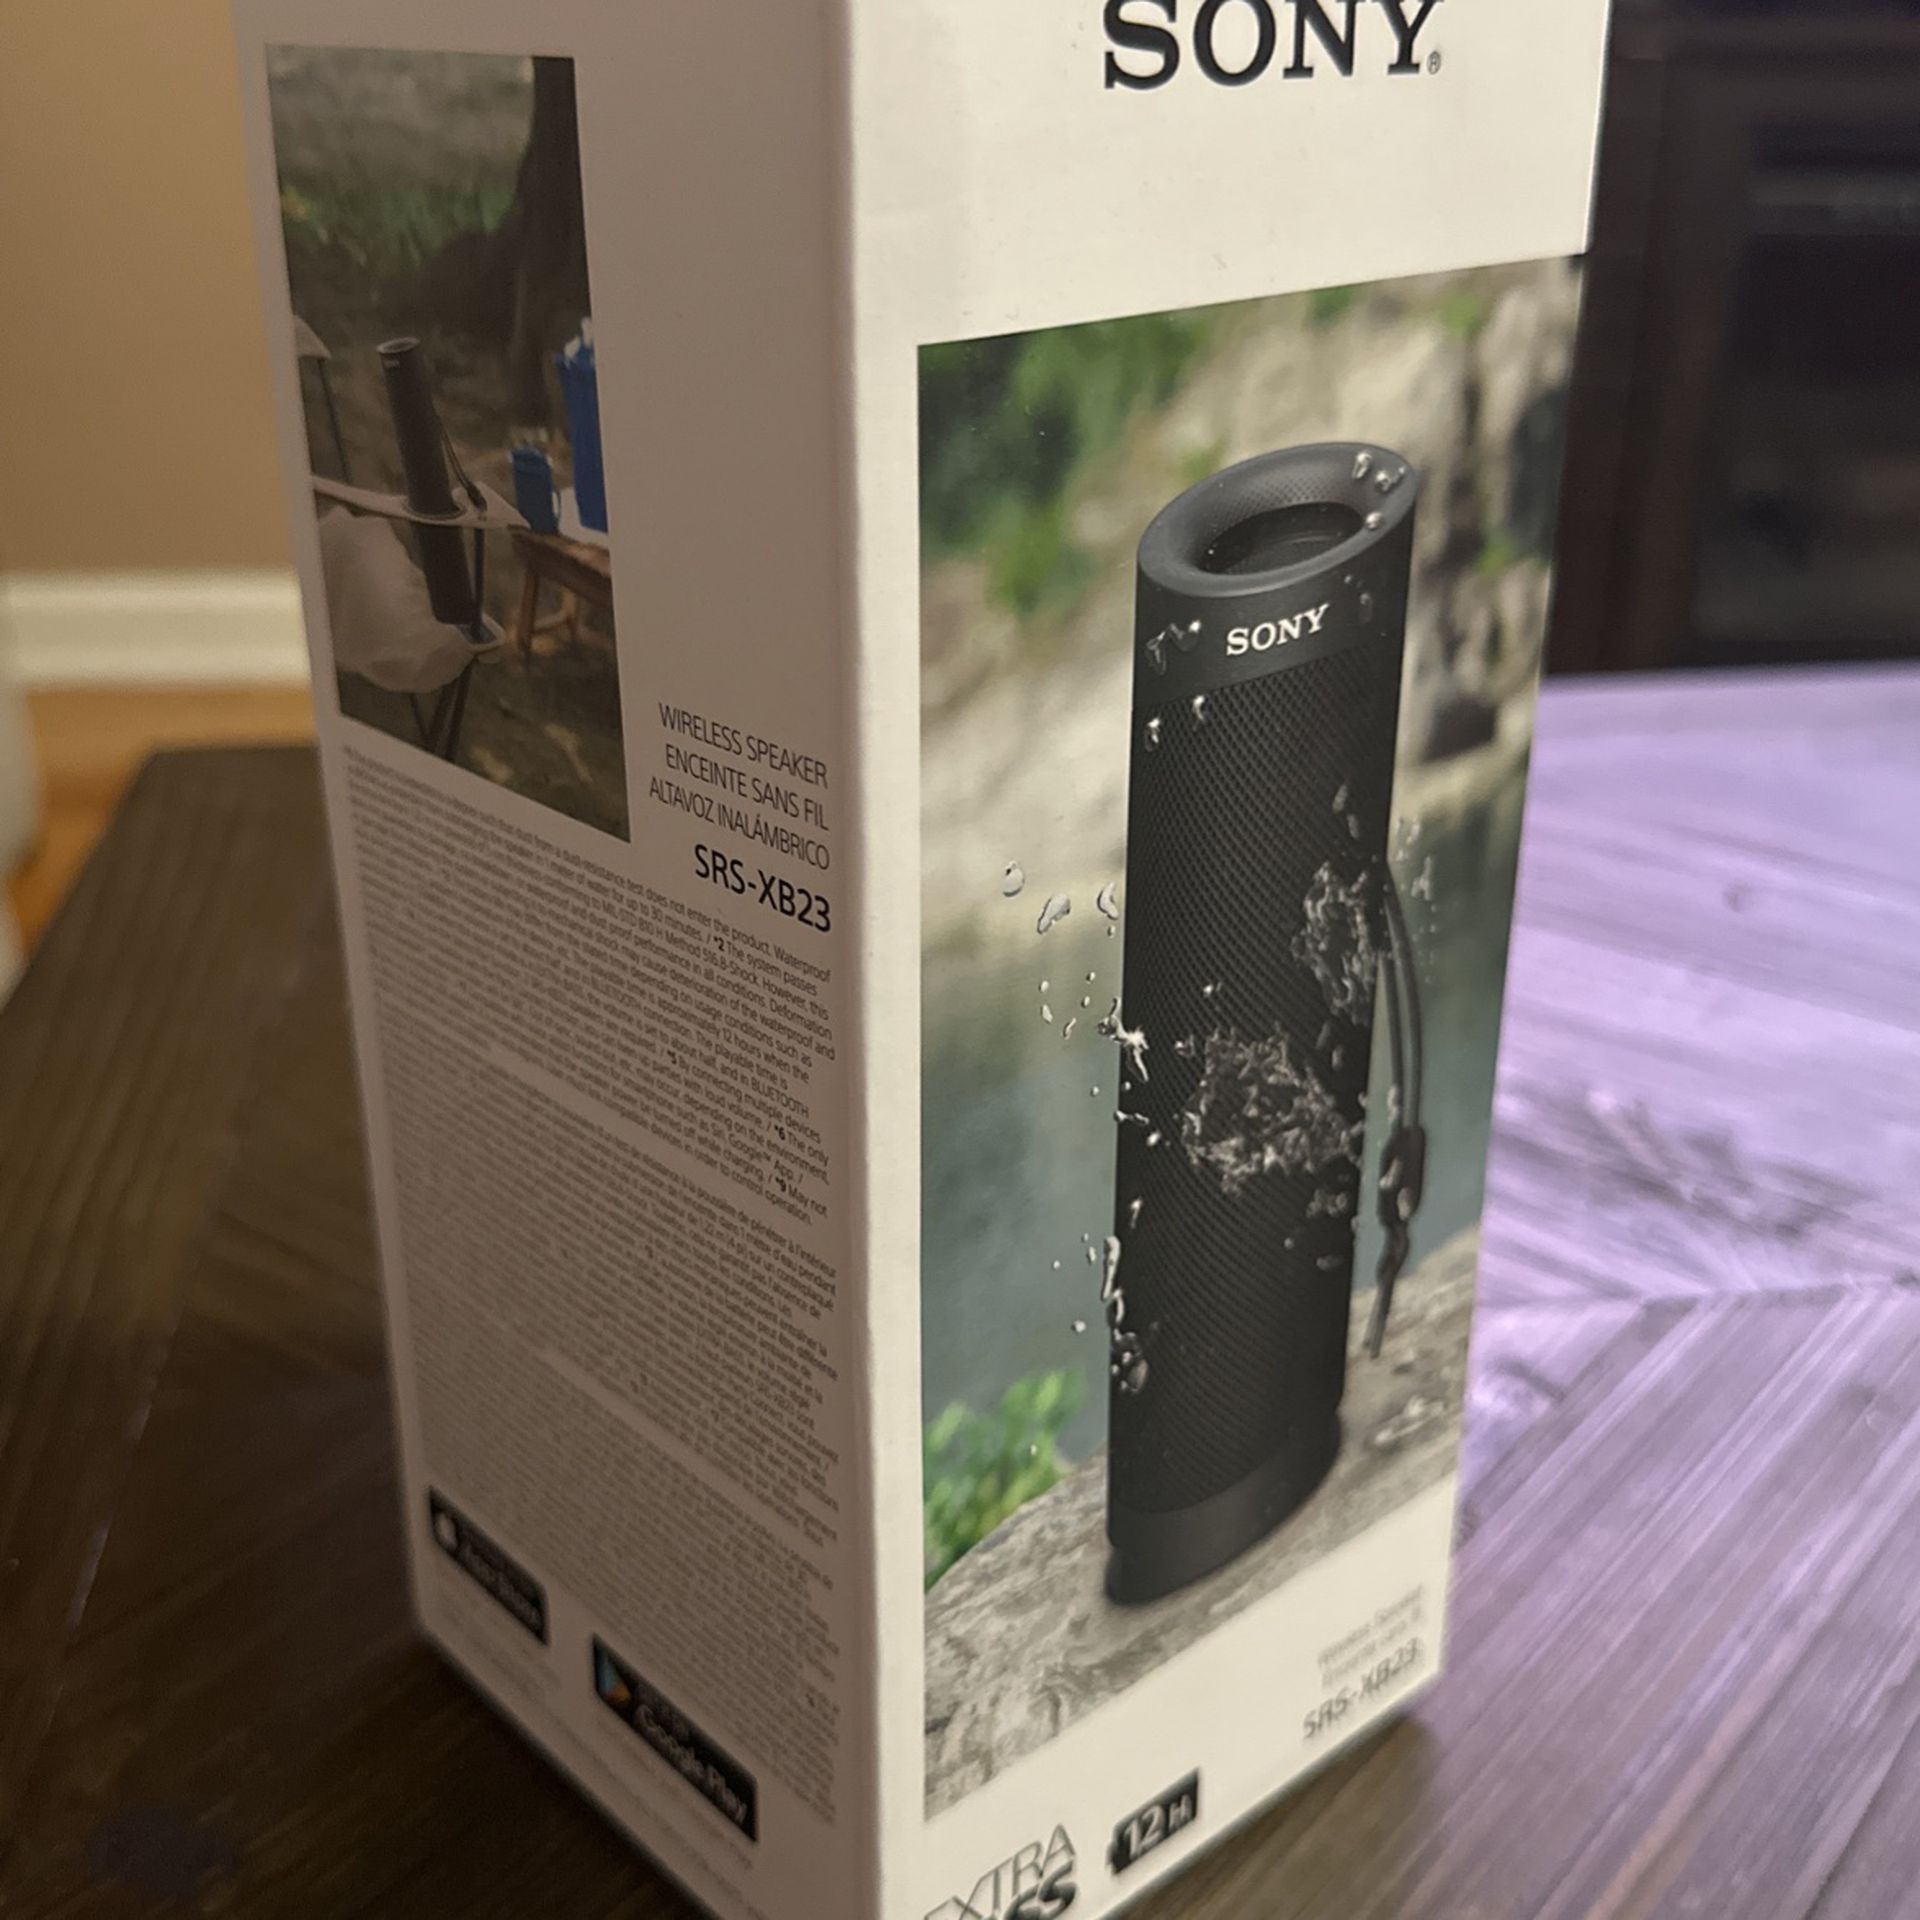 Sony - Enceinte bluetooth SRS-XB23